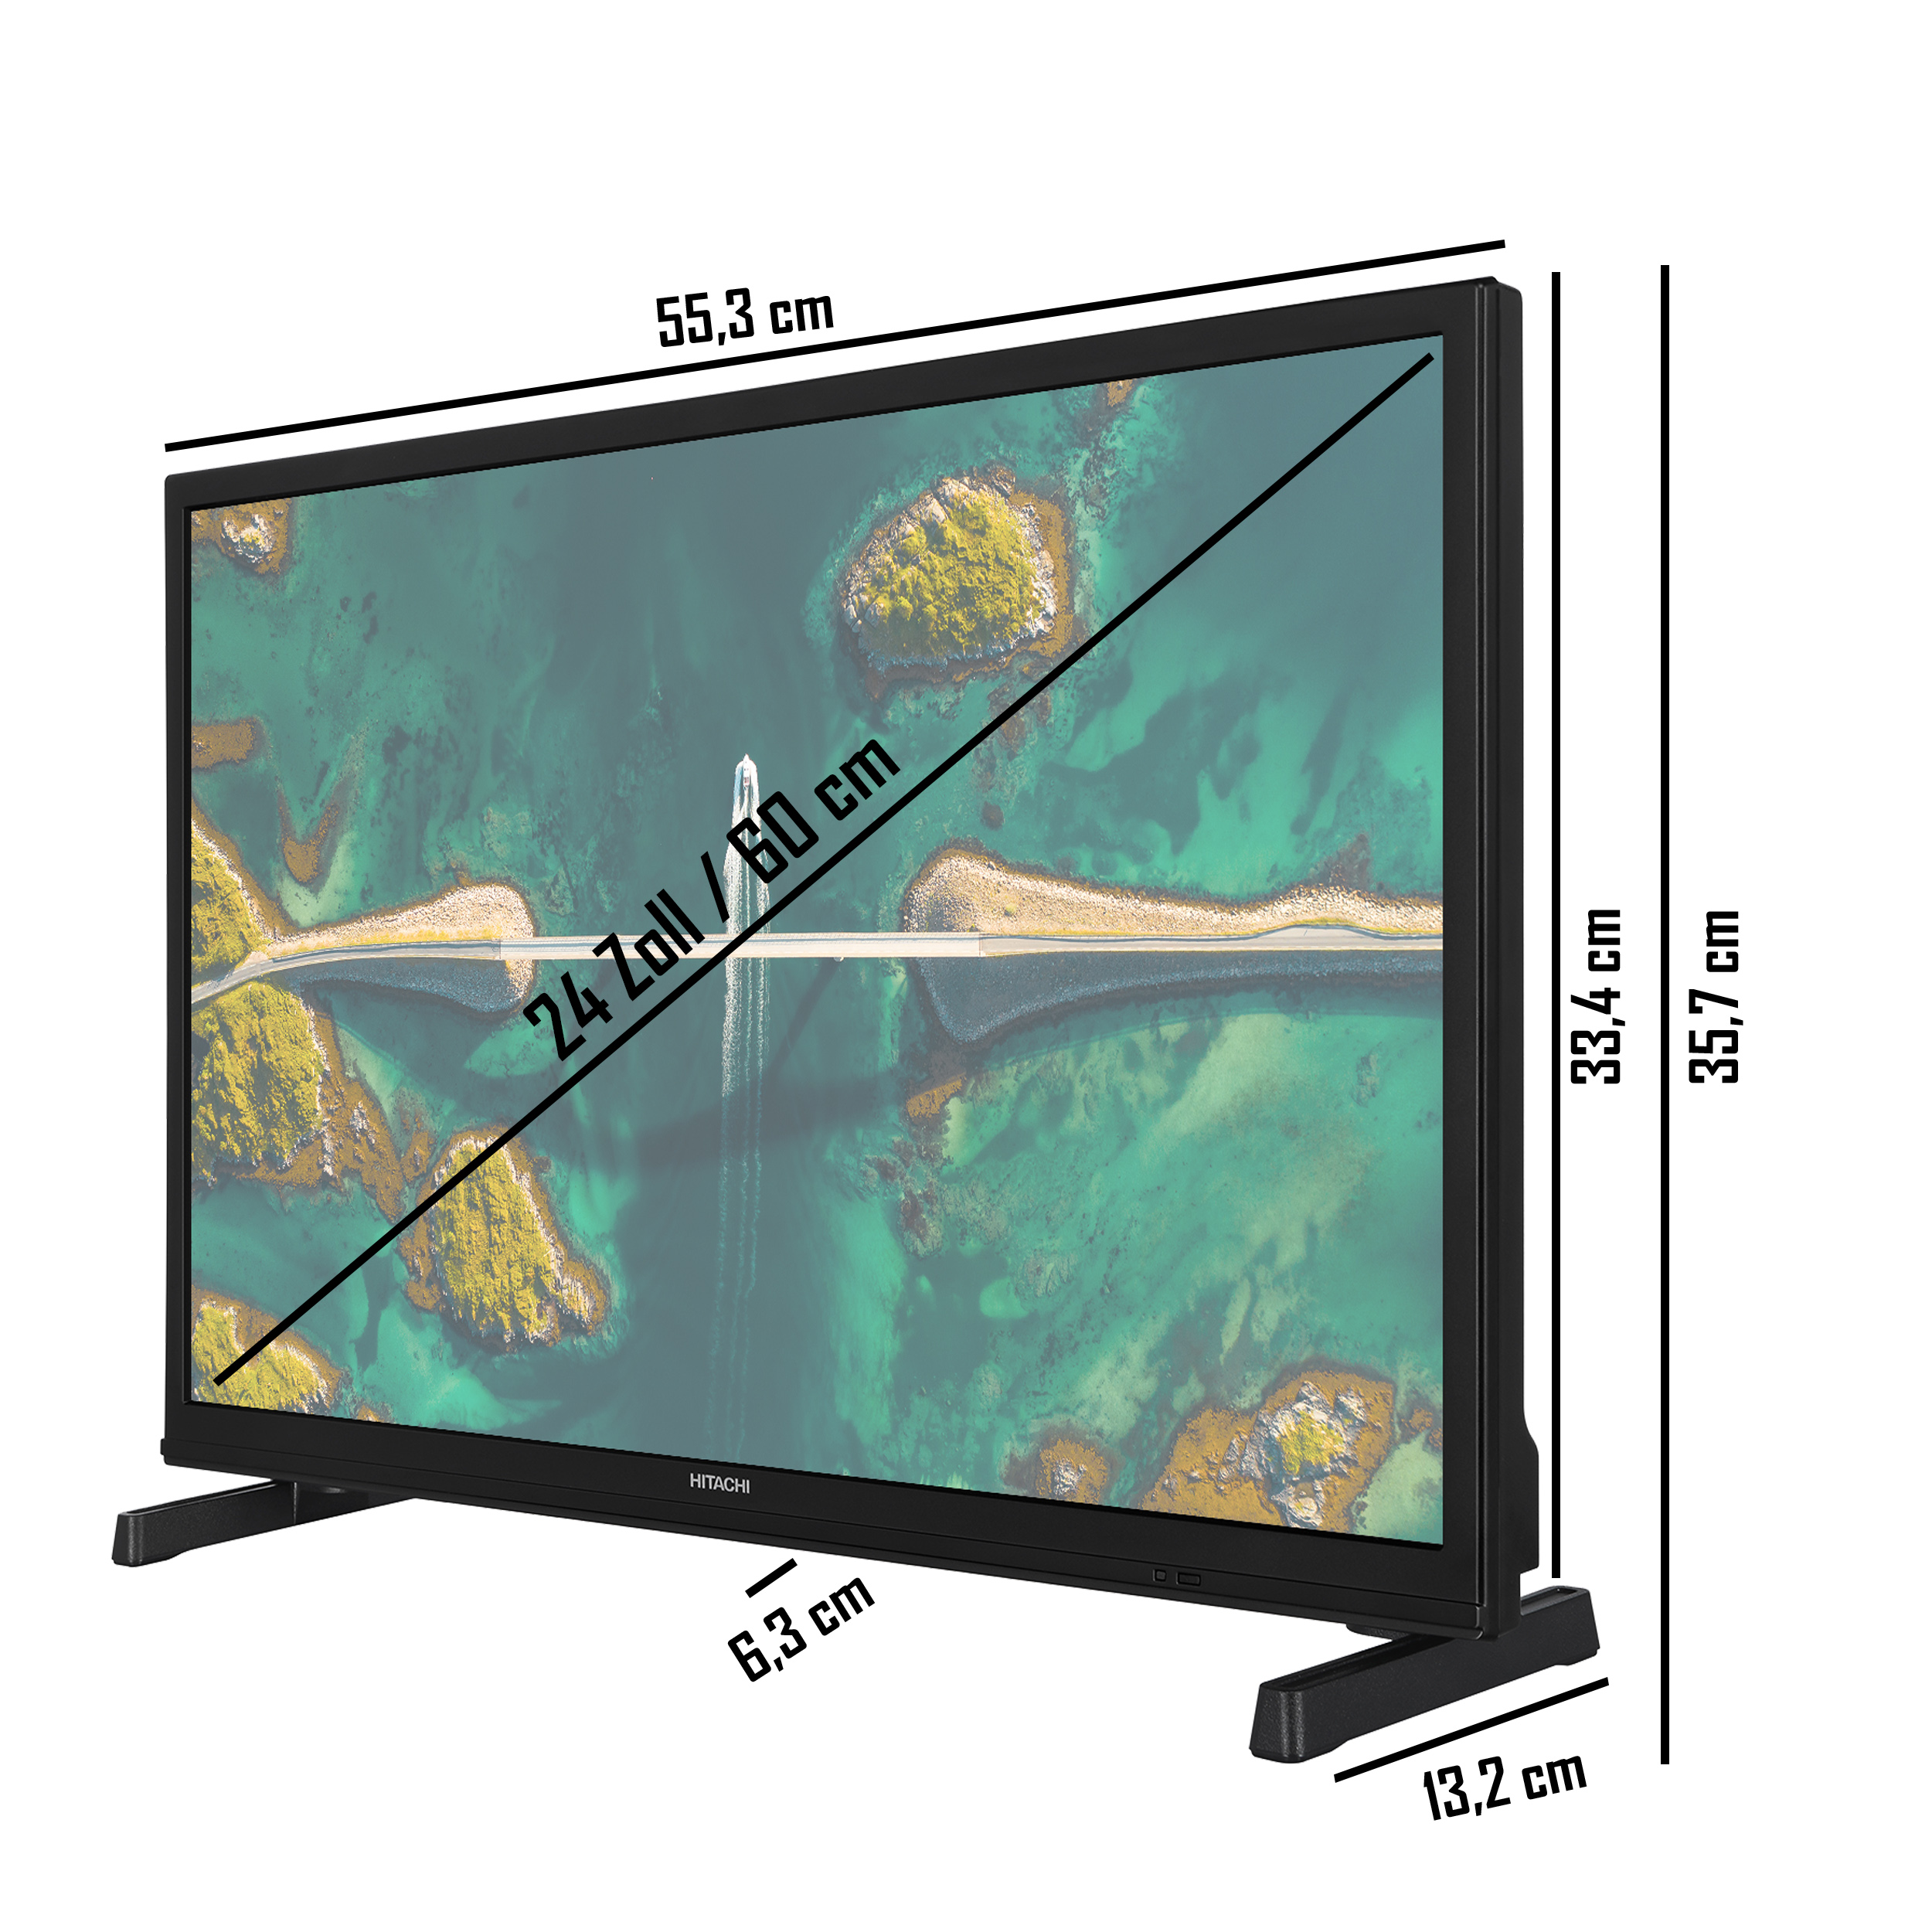 HITACHI H24E2305V TV) 24 TV (Flat, 60 cm, / SMART HD-ready, Zoll LED